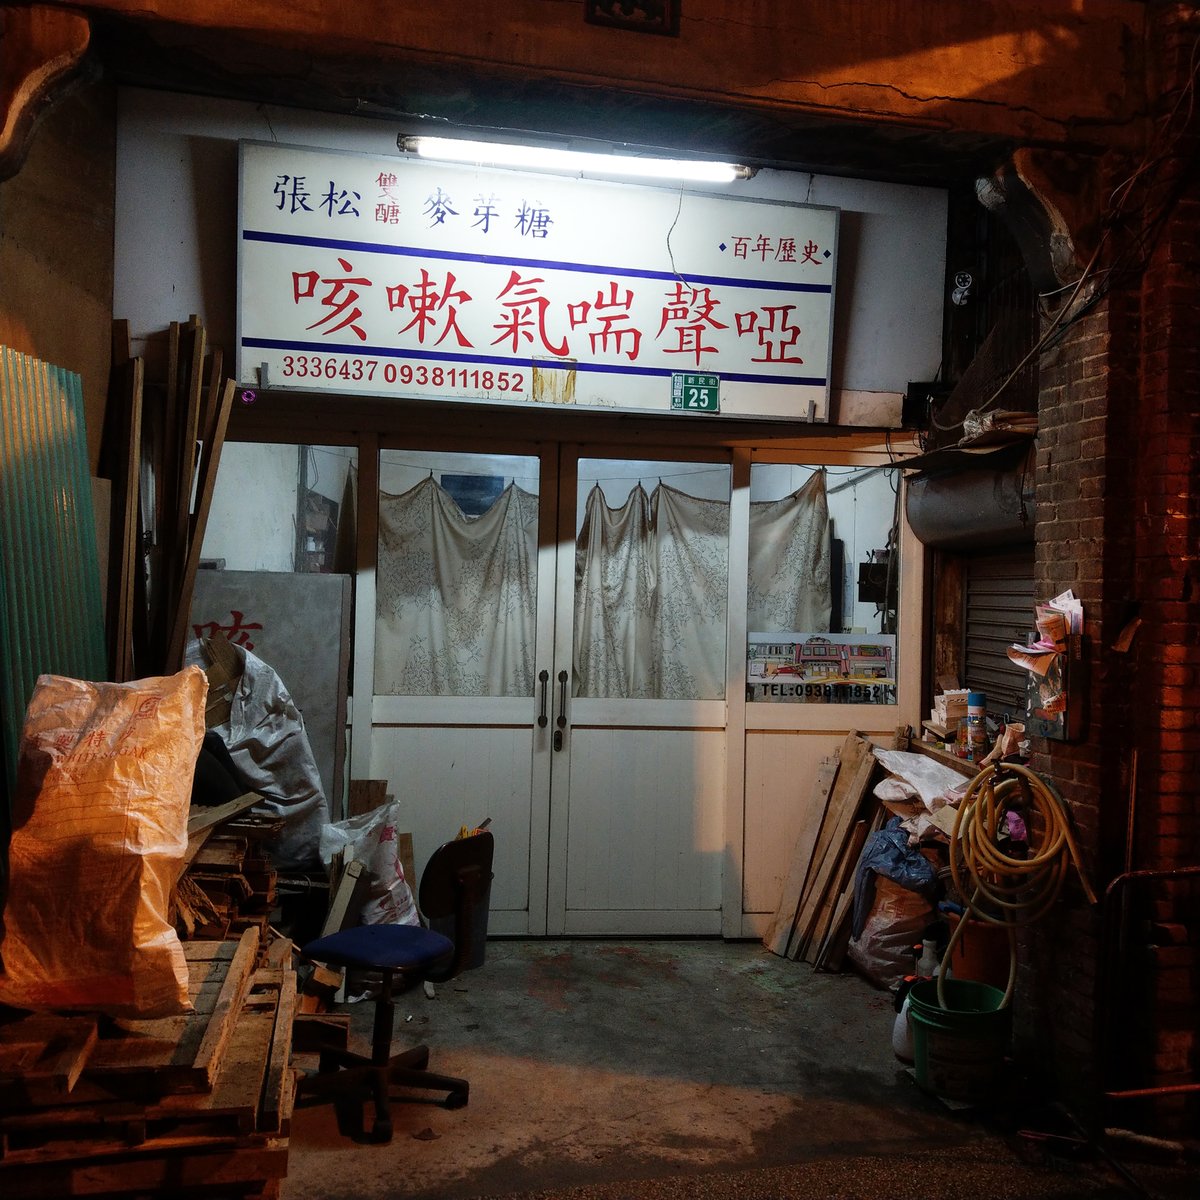 ★看影片：https://t.co/jGW4DkJH7n Taoyuan First Street 桃園第一街「 (Xinmin Street，又稱「 ，街上的老店，每次經過都會看一眼，順便注